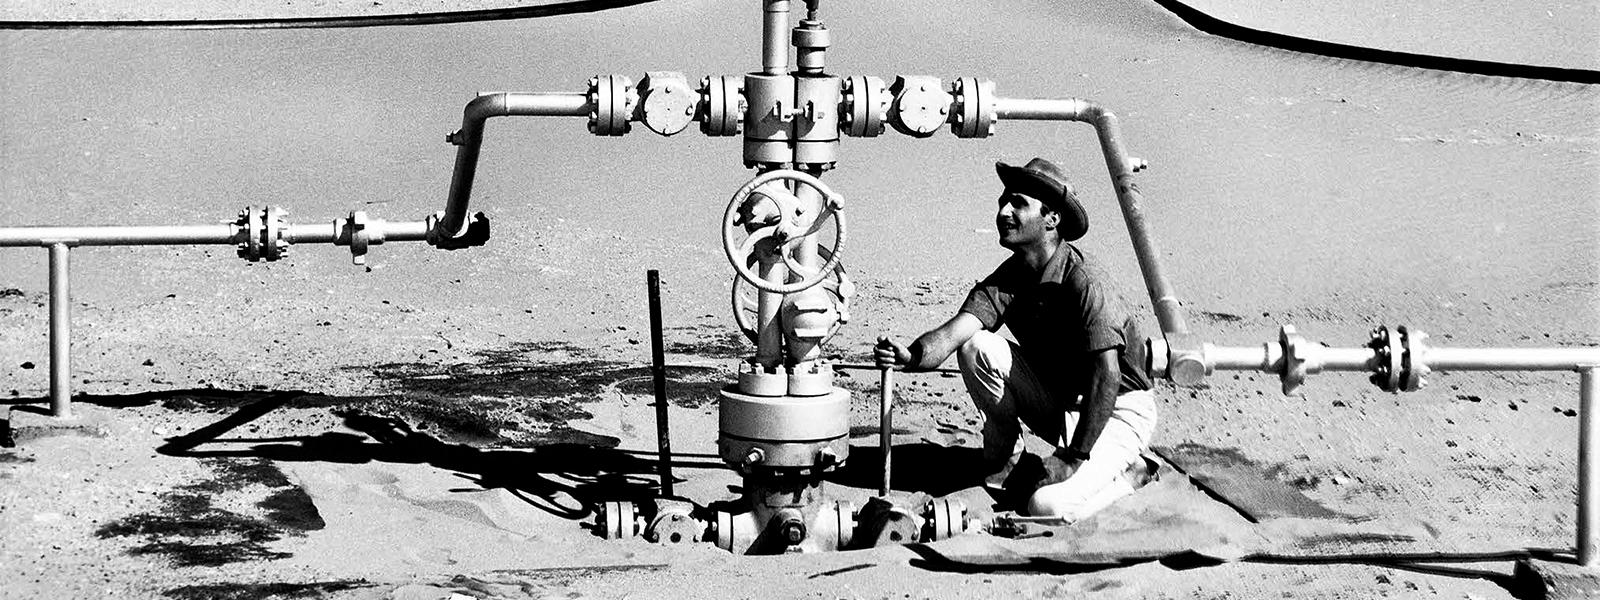 Compagnie de recherche et d'exploitation de pétrole au Sahara (CREPS) - Centrale de détente dans le Sahara - Relevé de pression effectué par un homme accroupi. Elf aquitaine